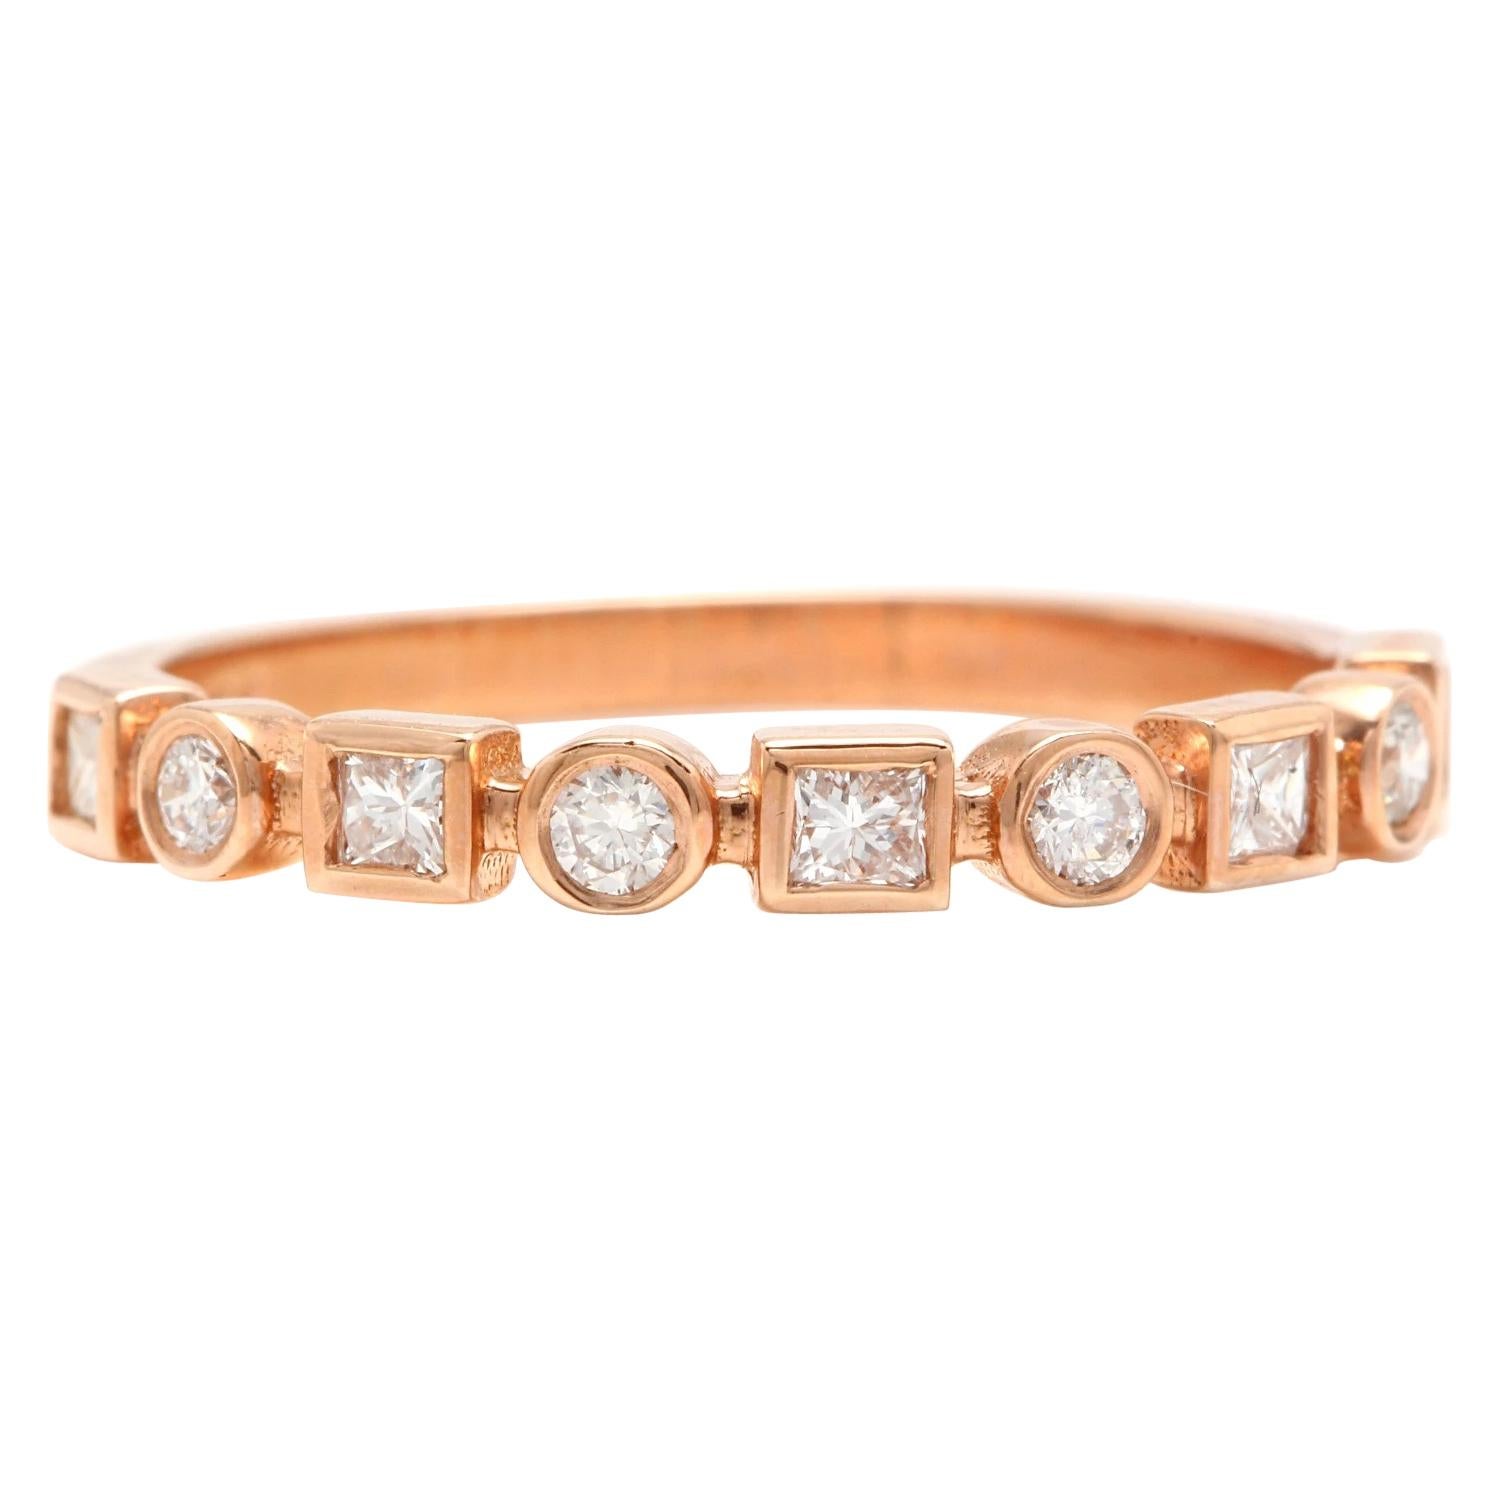 0.35 Carat Natural Diamond 14 Karat Solid Rose Gold Band Ring